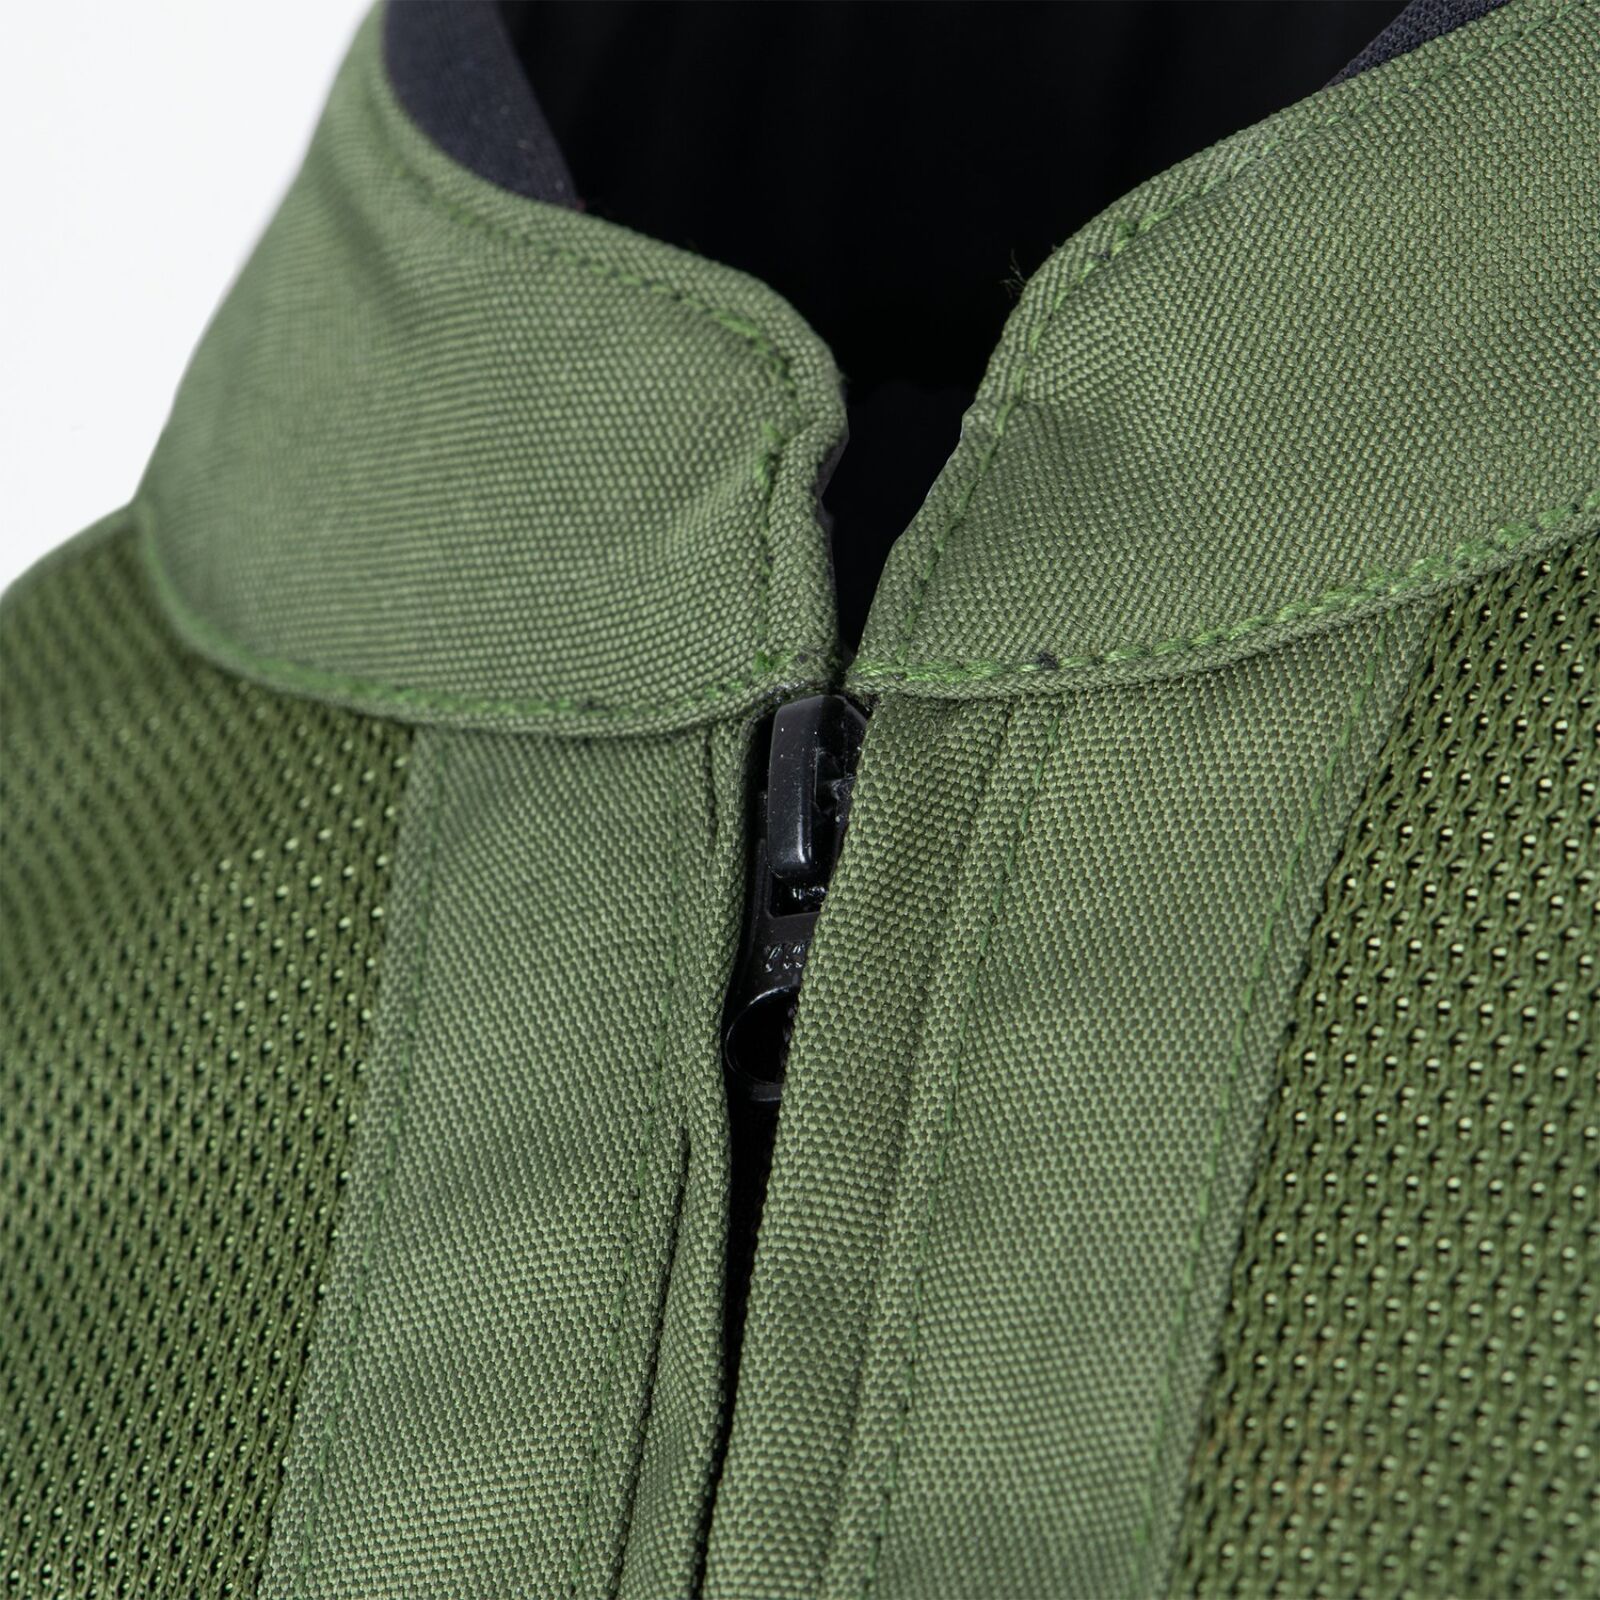 Obrázek produktu bunda IOTA 1.0 AIR, OXFORD, dámská (zelená khaki)